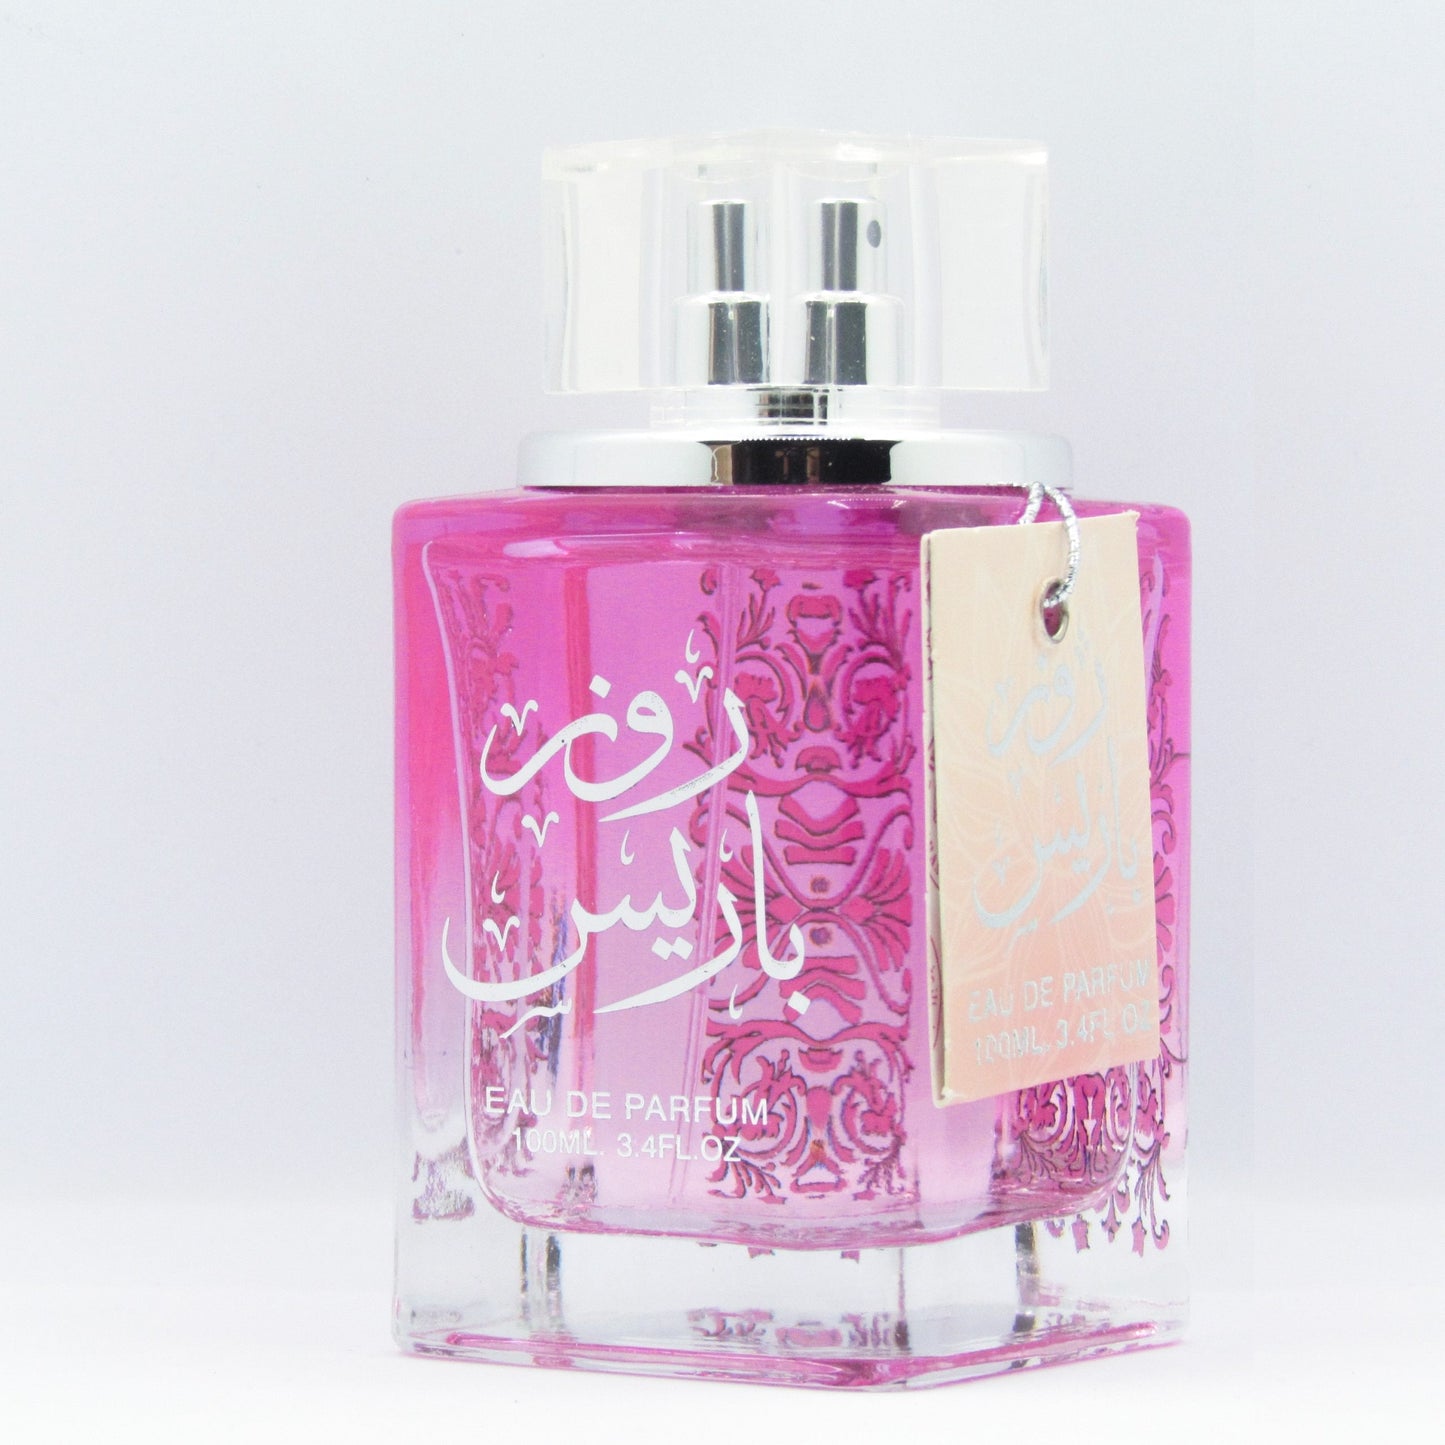 Rose Paris Eau de Parfum 100ml Ard al Zaafaran-Perfume Heaven